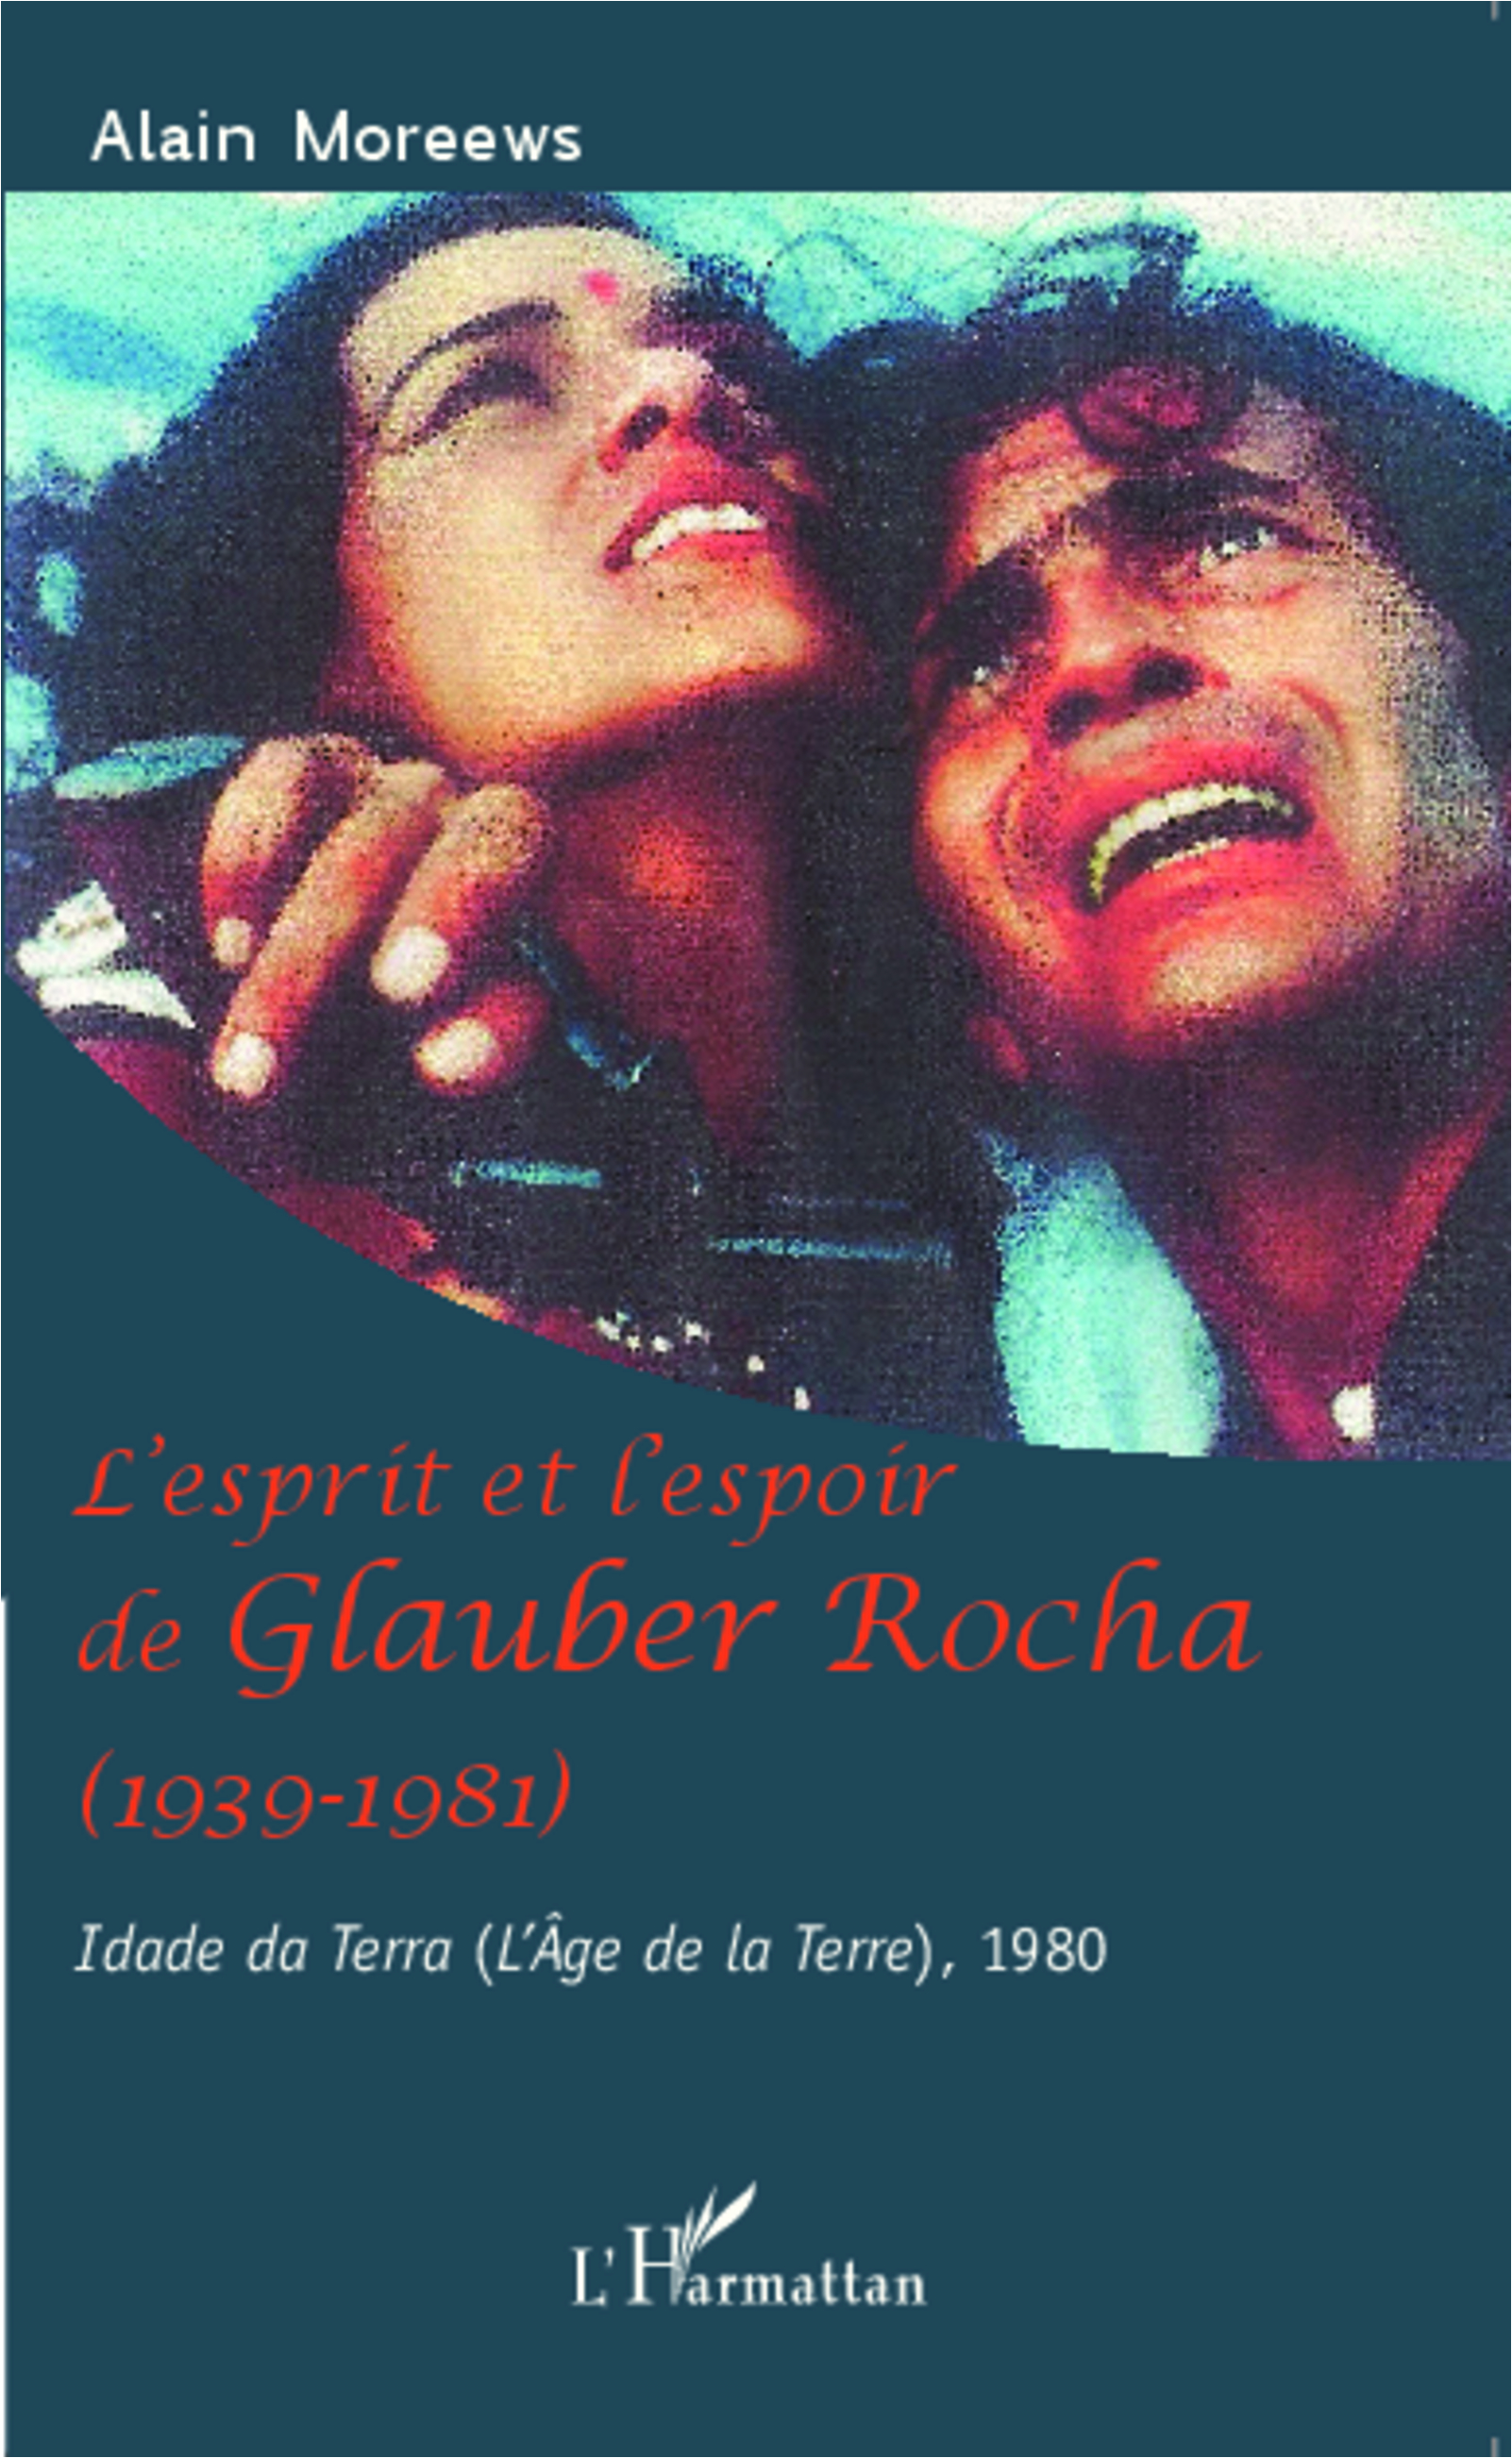 L'esprit et l'espoir de Glauber Rocha (1939-1981)